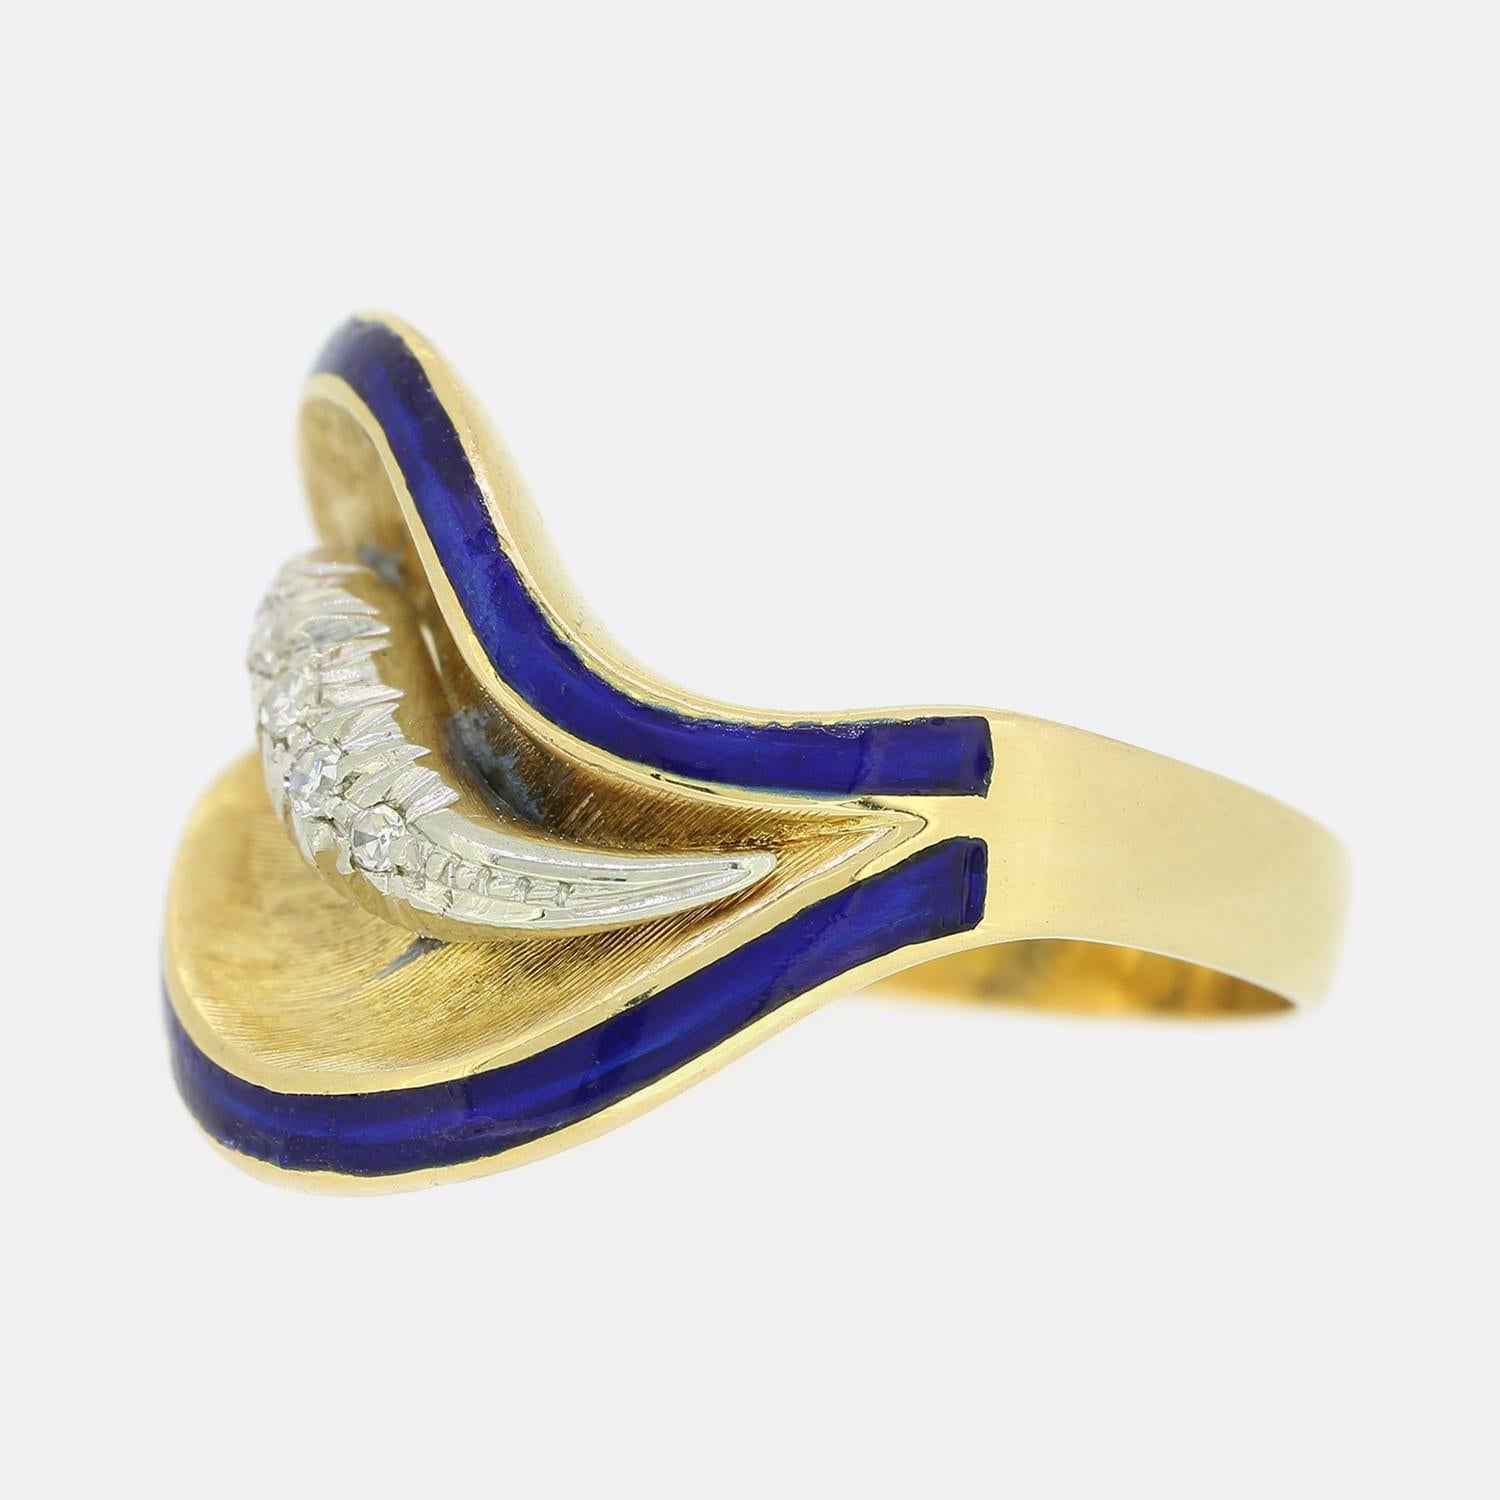 Dies ist ein Vintage 18ct Gelbgold Diamantring. Der Ring ist im Wirbel-Stil gehalten und innerhalb von 2 blauen Emailschichten befinden sich 5 Diamanten im Acht-Schliff, die in Weißgold gefasst sind, um ihr Funkeln zu verstärken.

Zustand: Gebraucht